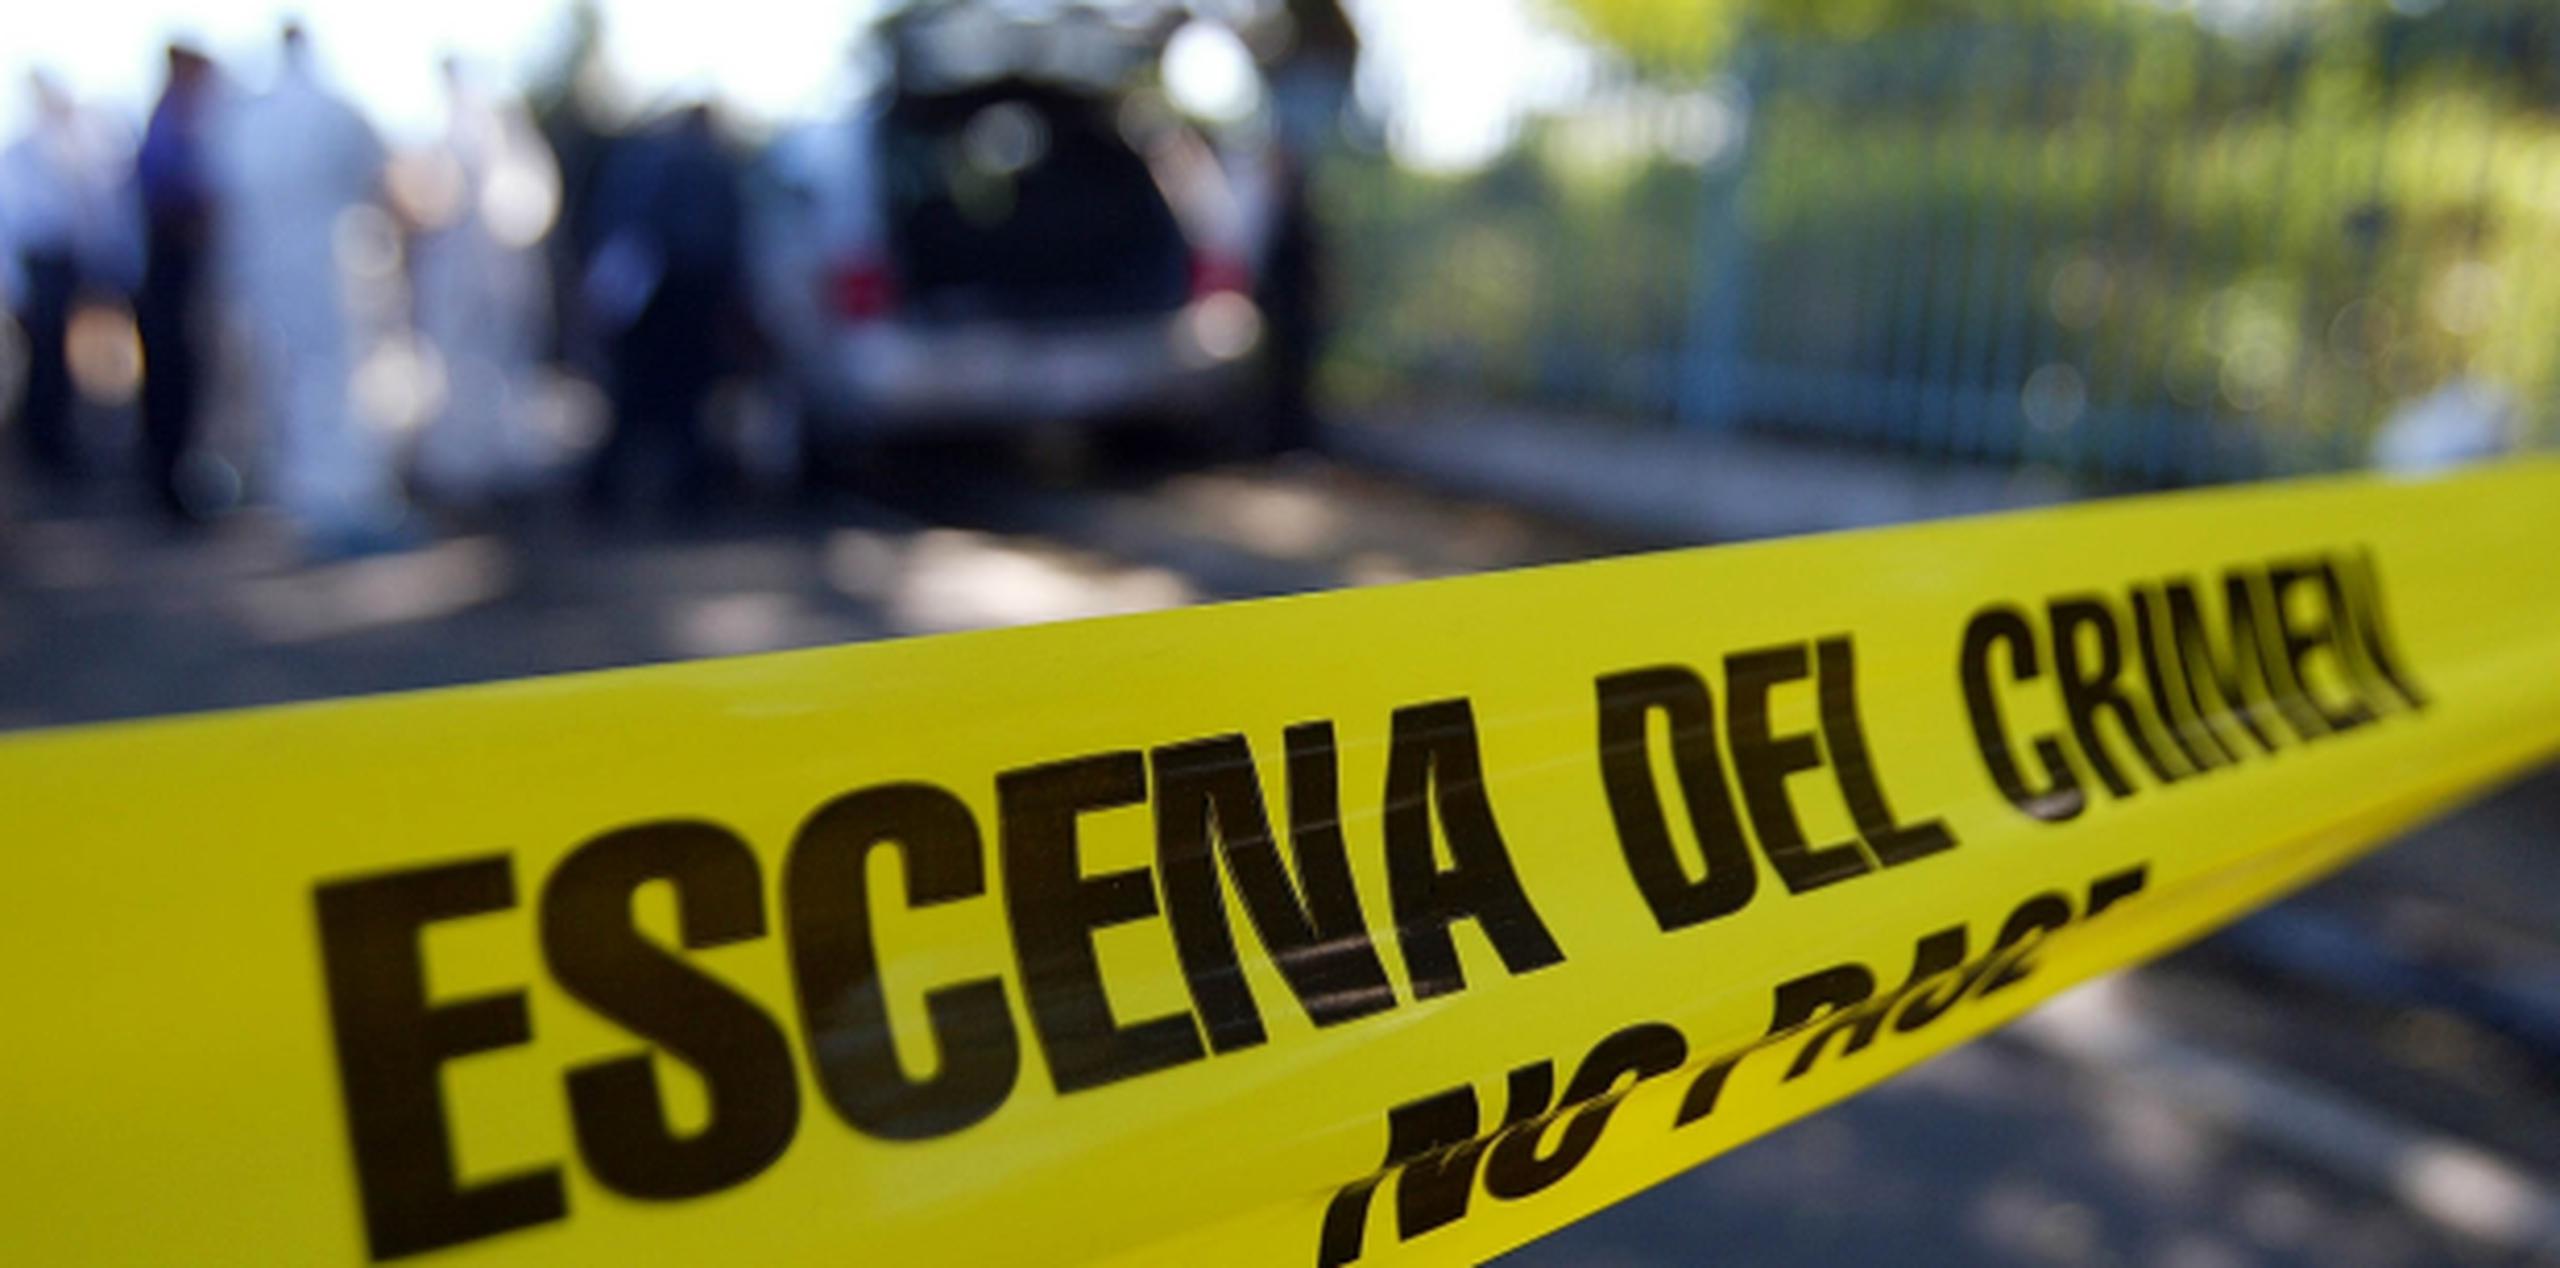 El crimen ocurrió en el sector Laberinto en el barrio Certenejas, en Cidra. (Archivo)